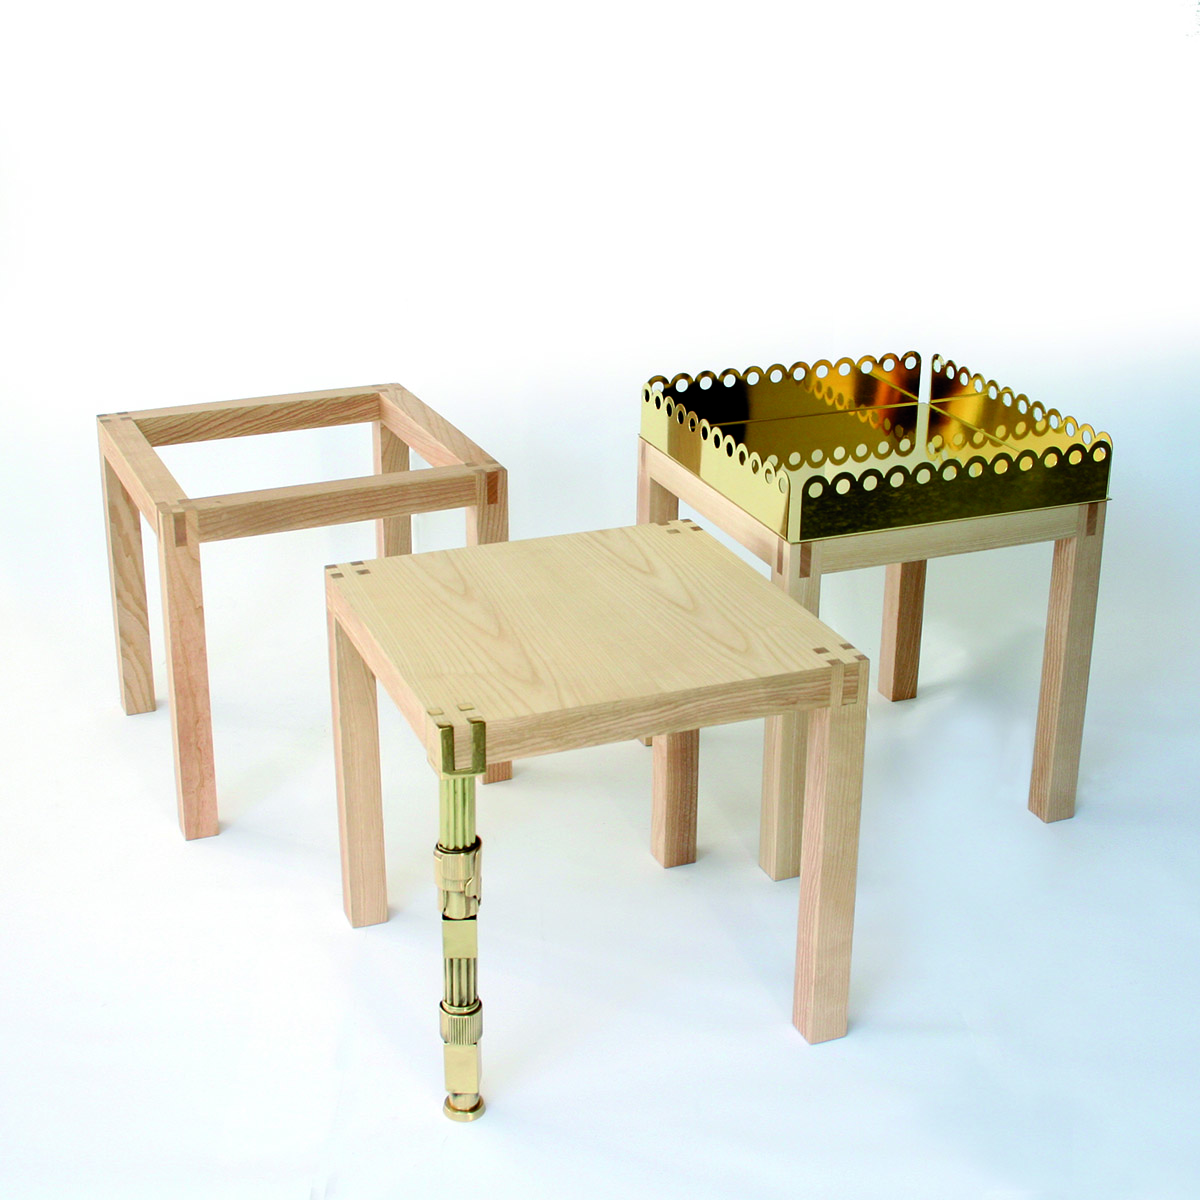 Tavolino design Brutto Anatroccolo 1 by Gumdesign